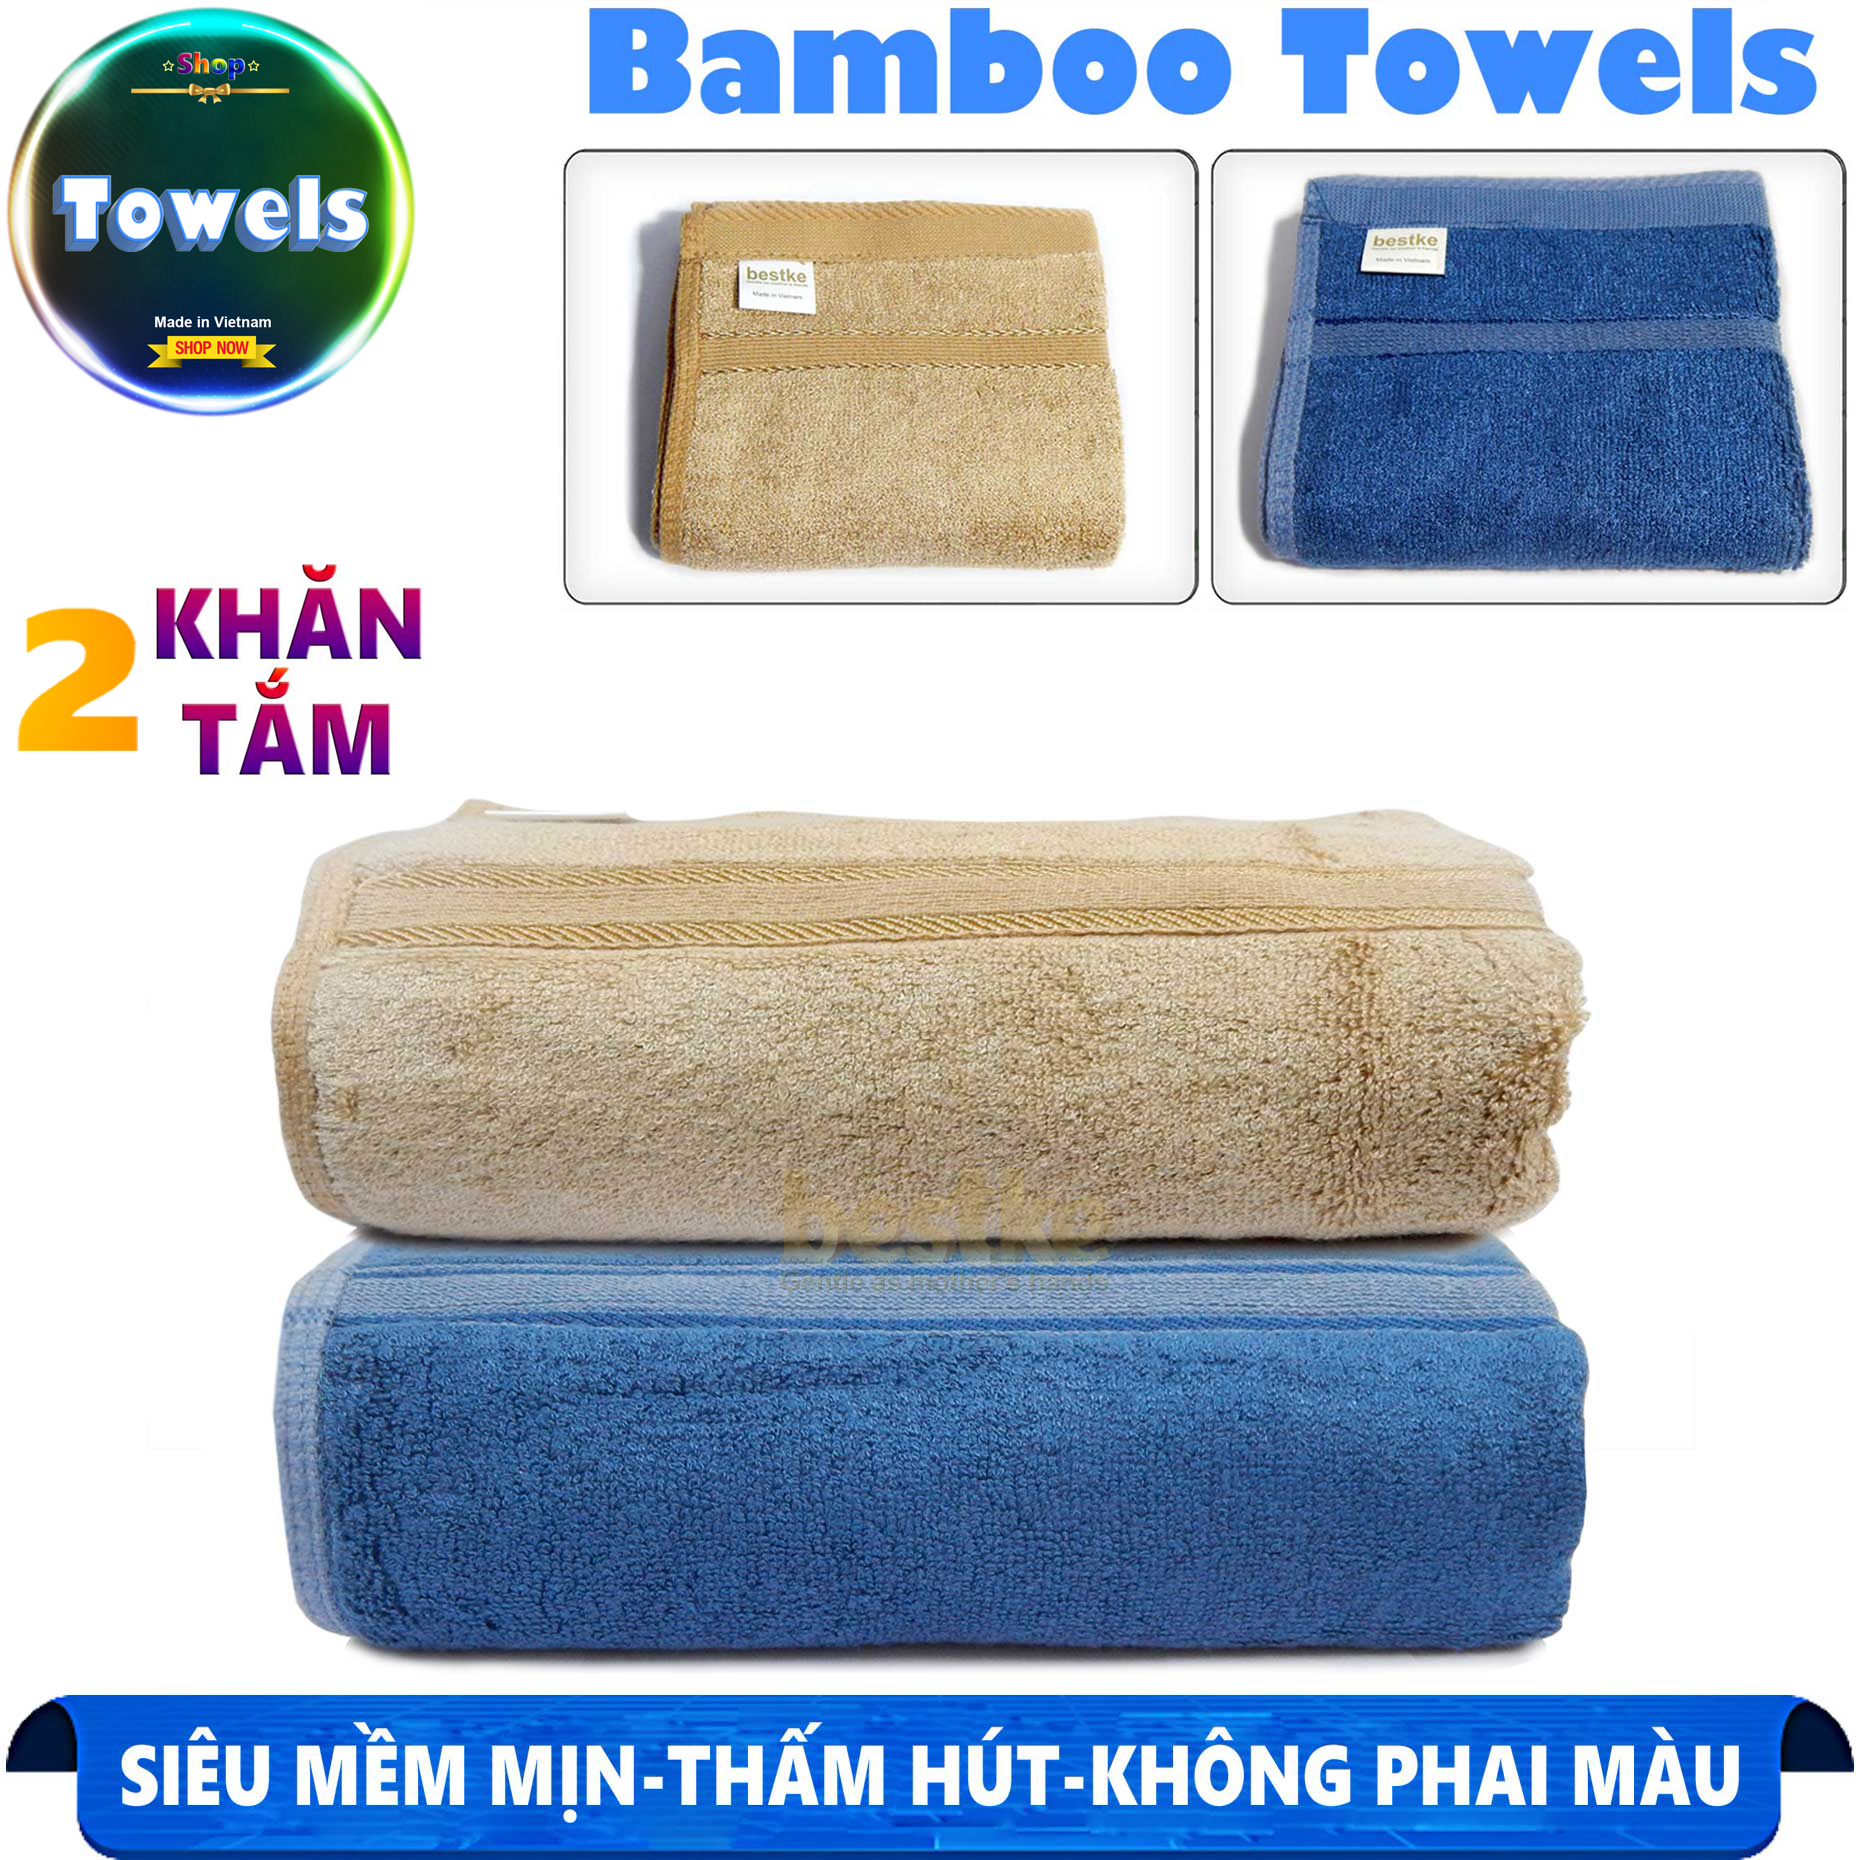 khăn tắm , khăn sợi tre , Khăn tắm bamboo cao cấp xuất khẩu